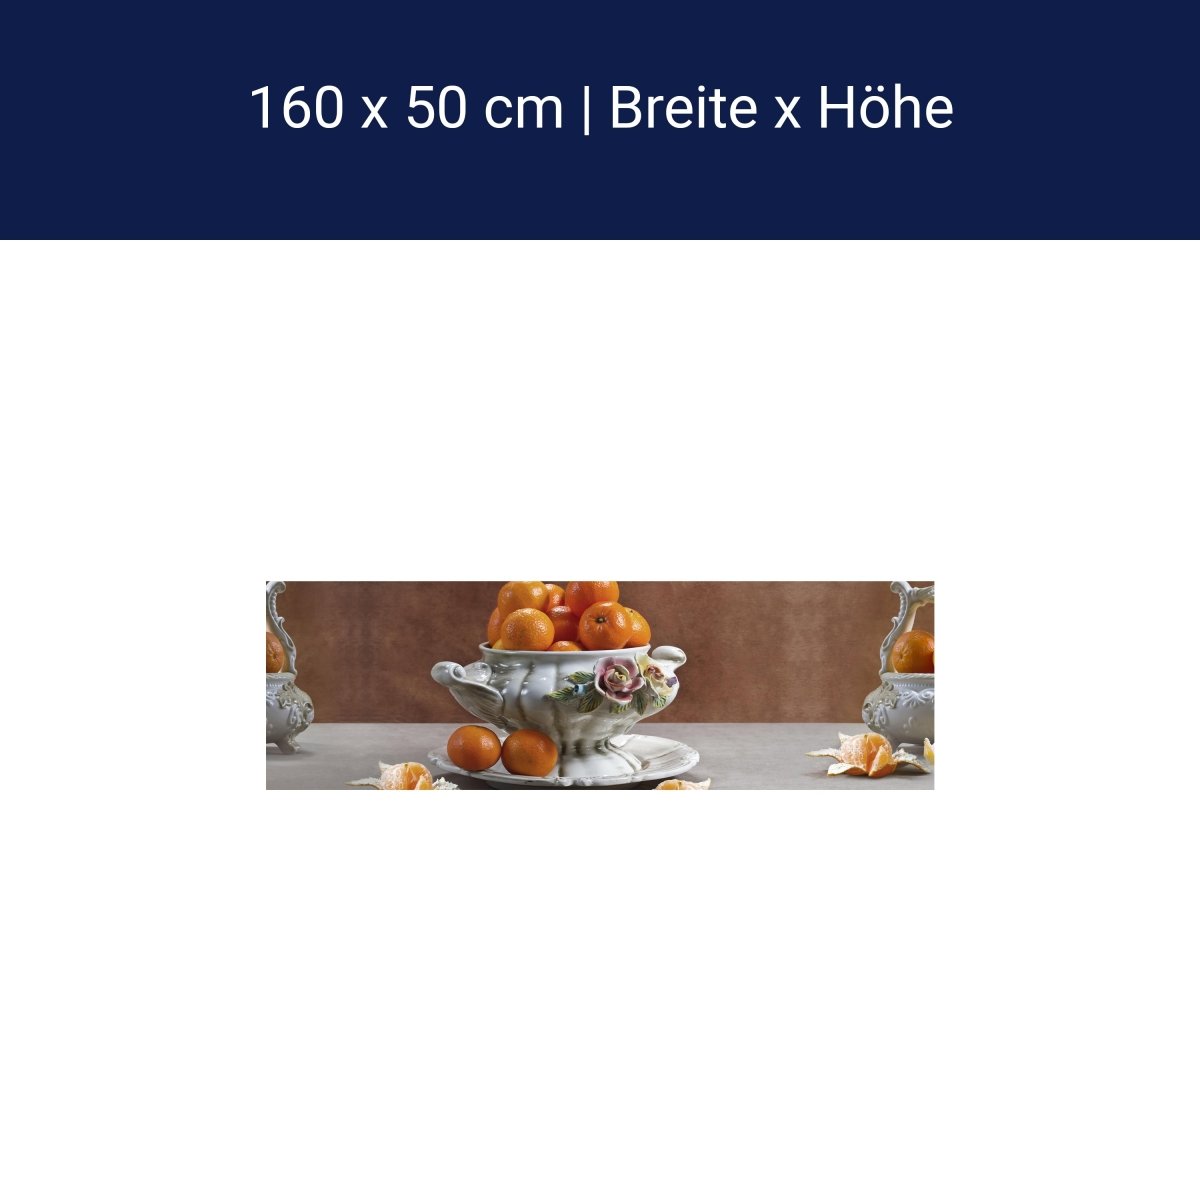 Kitchen splashback tangerine porcelain bowl fruit roses M1163